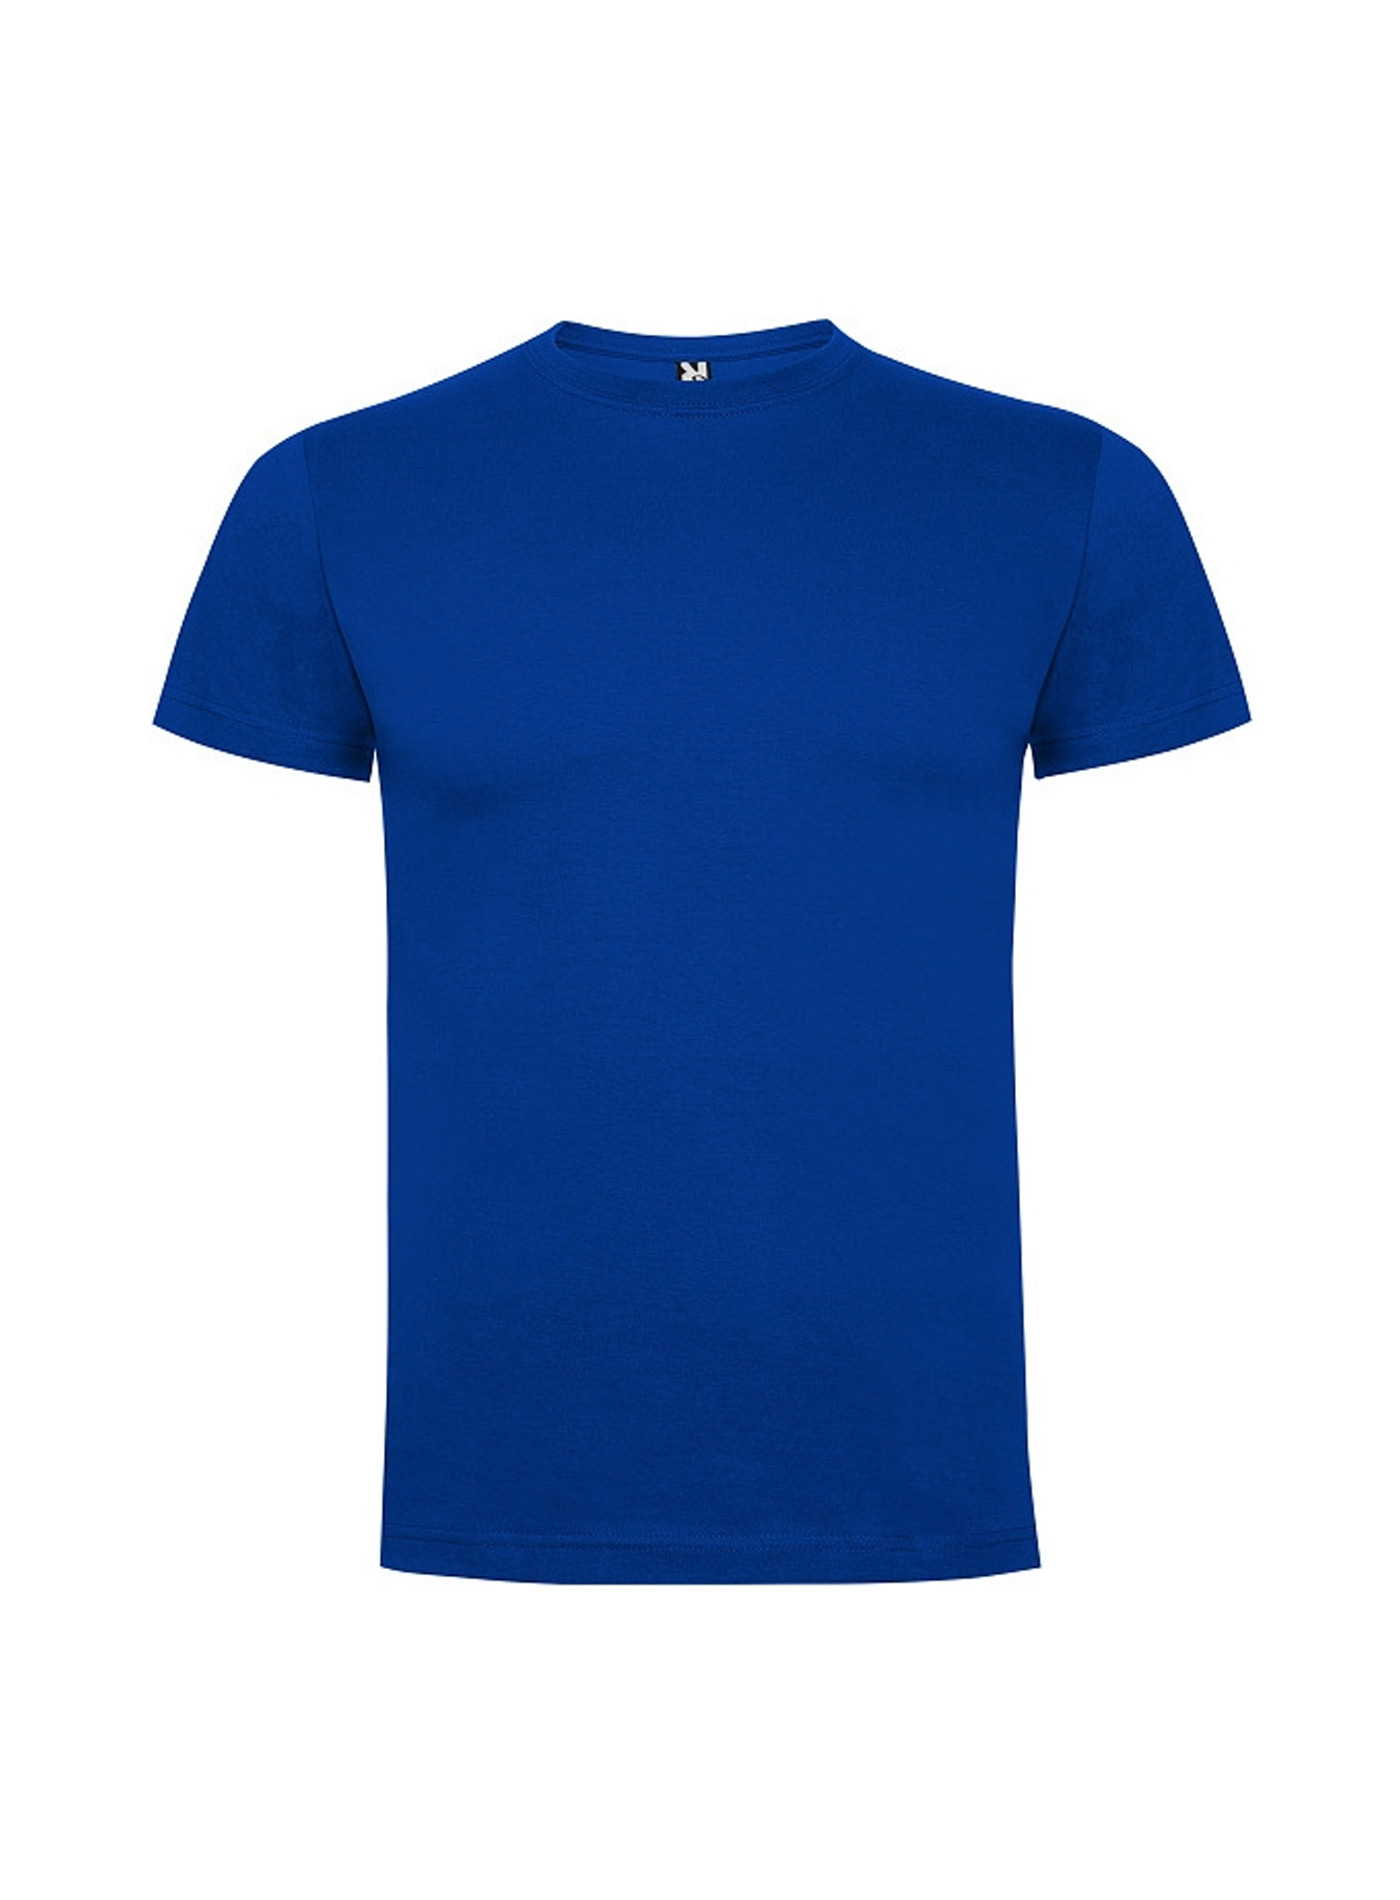 Dětské tričko Roly Dogo premium - Královská modrá 7-8